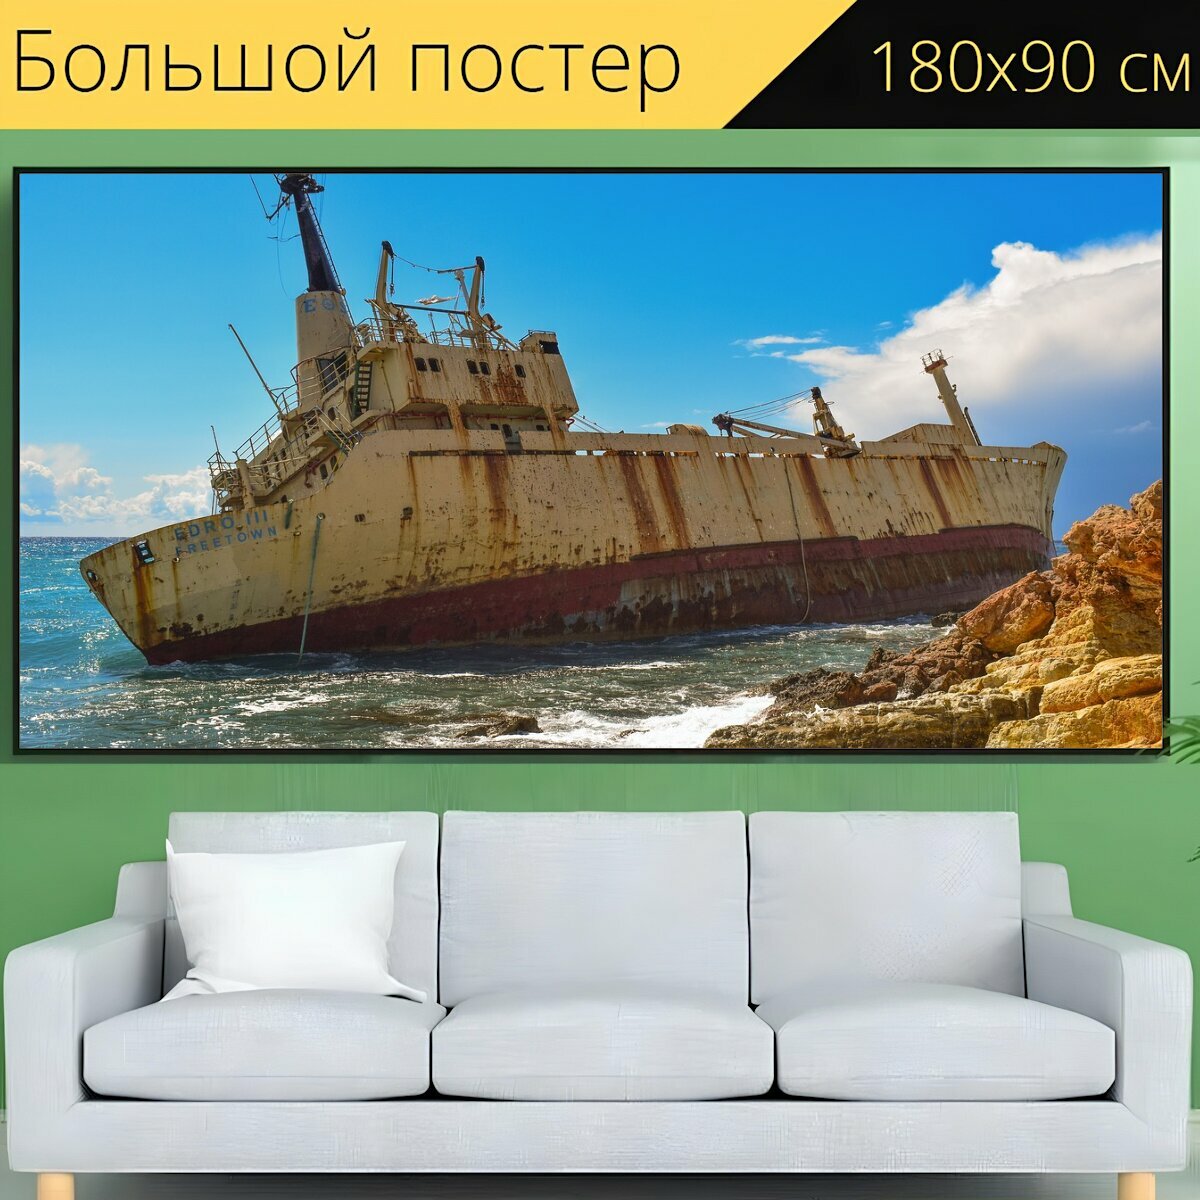 Большой постер "Кораблекрушение, скалистый берег, море" 180 x 90 см. для интерьера